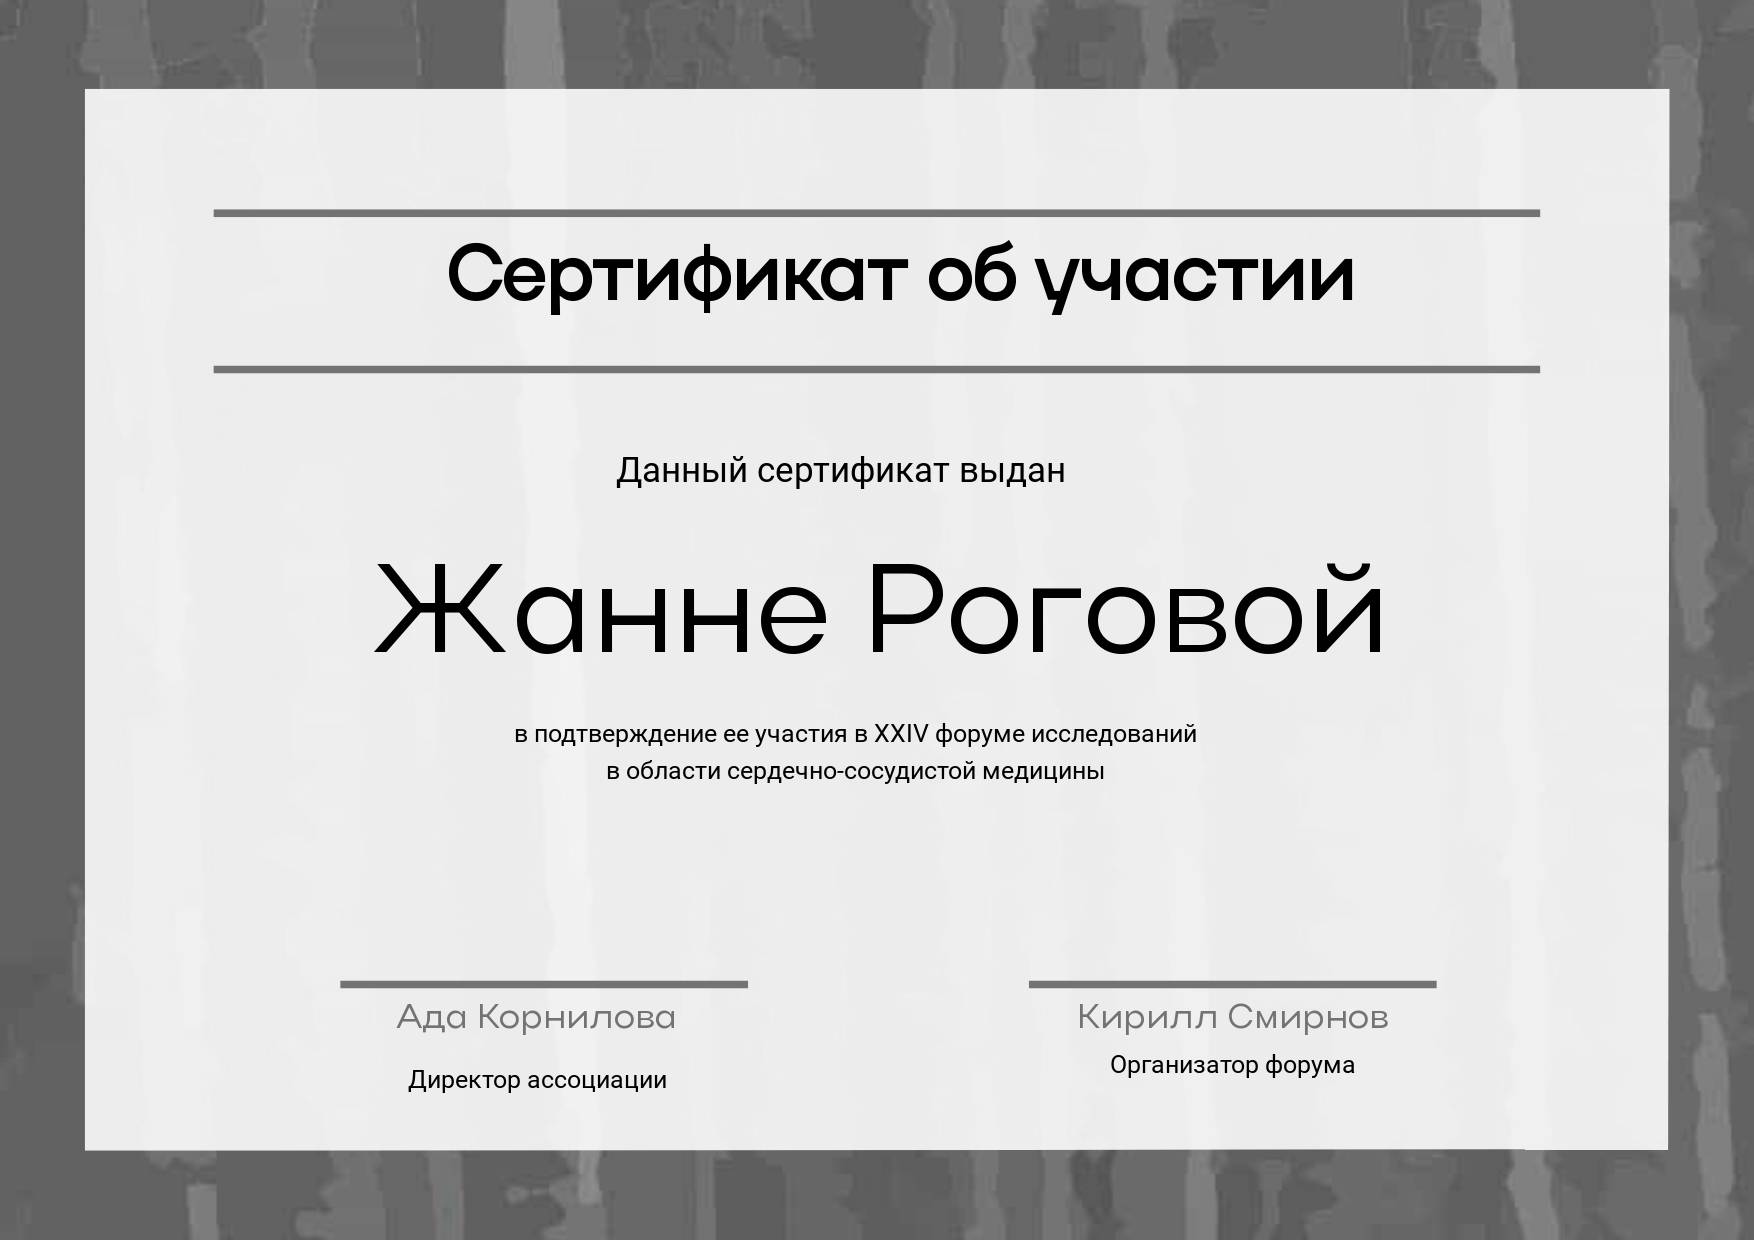 Темно-серый шаблон сертификата для участников курсов и мероприятий с готовым местом для текста и печатей